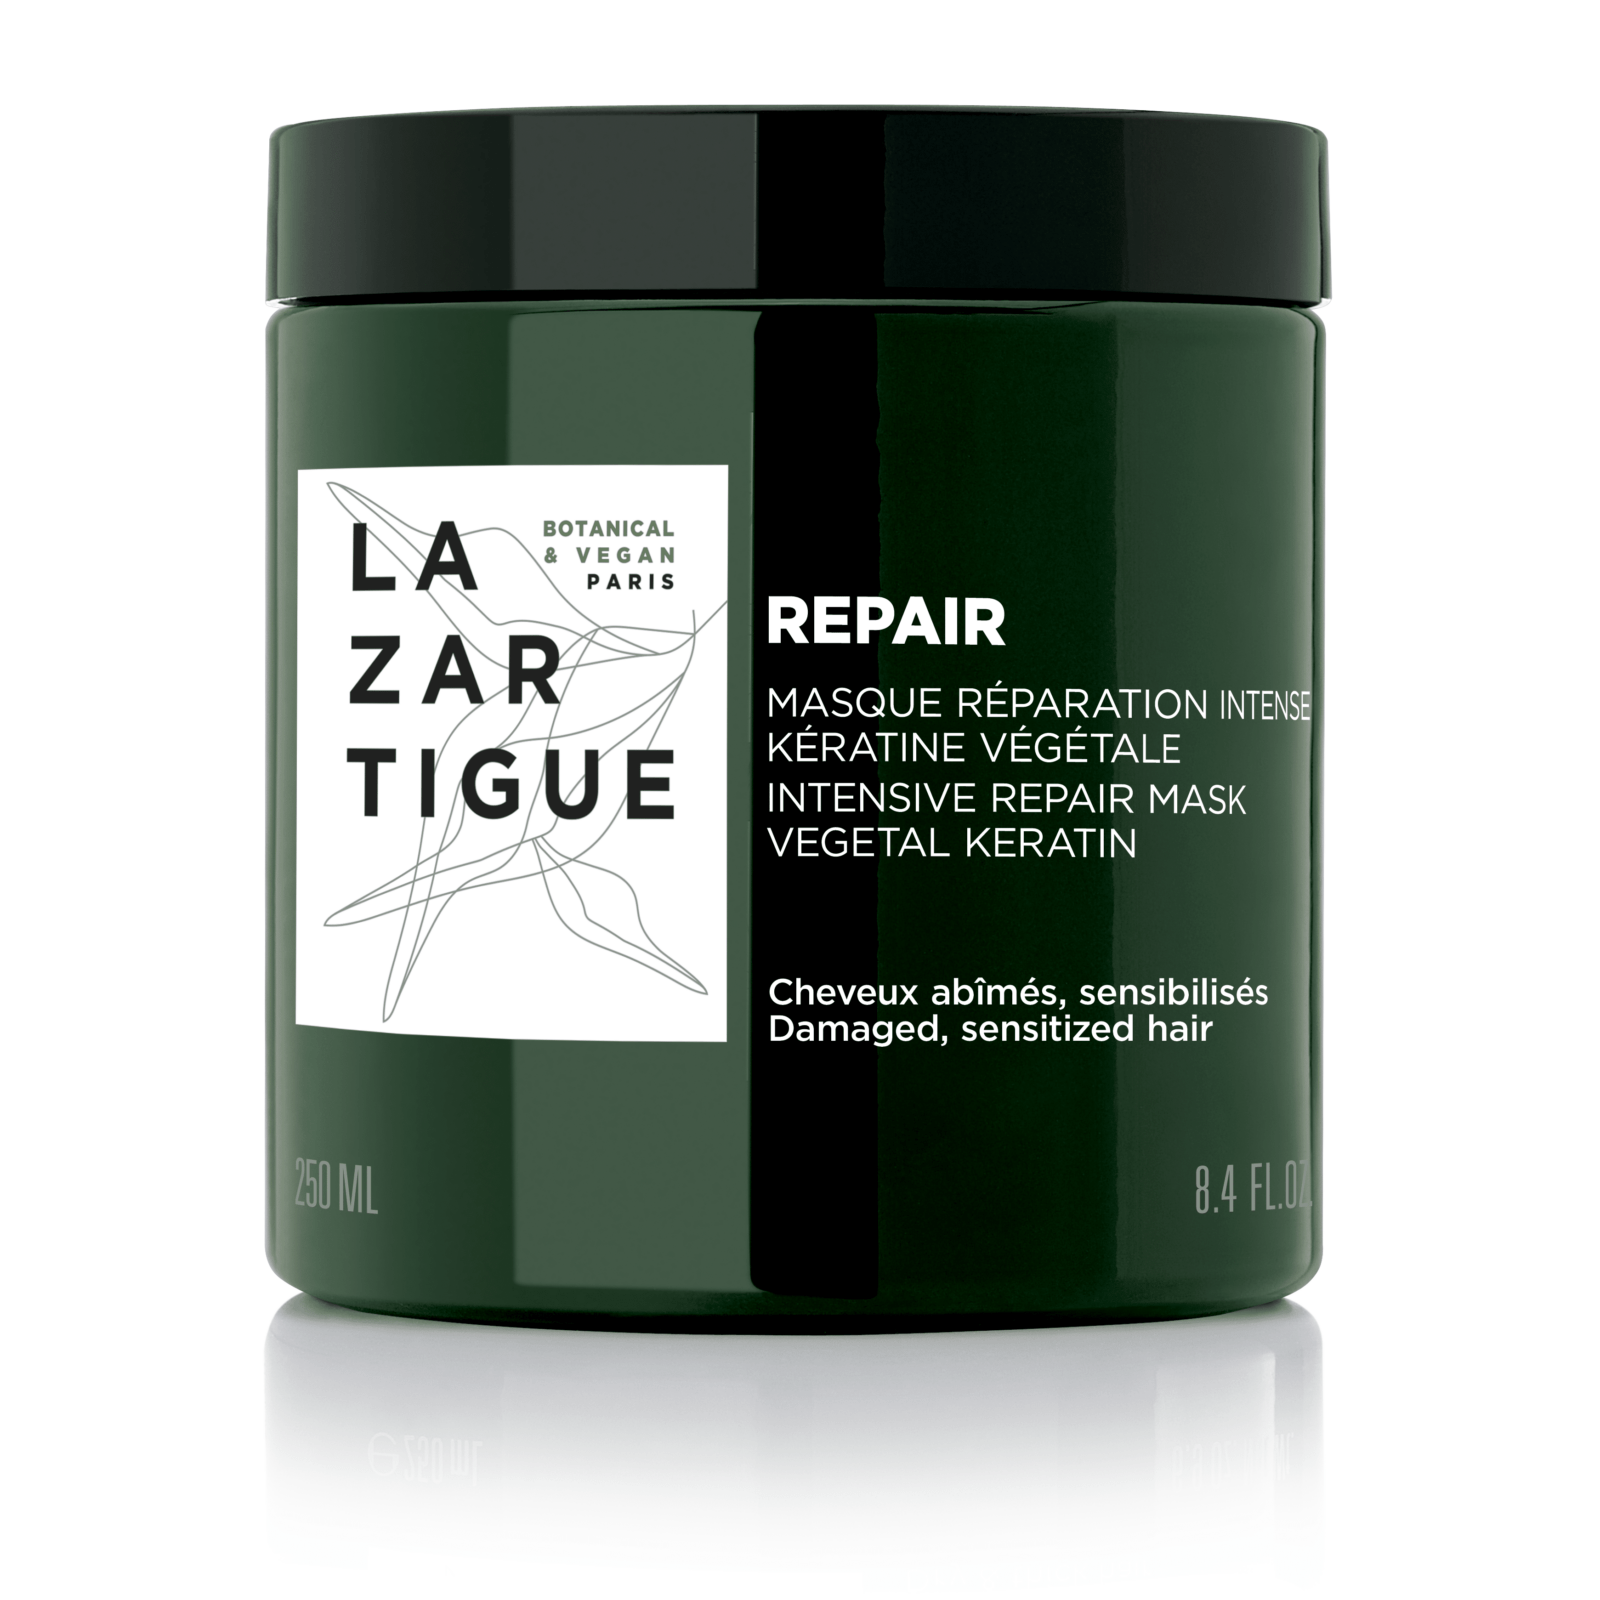 Tratamiento pre-shampoo Purify purificante regulador – Lazartigue CL